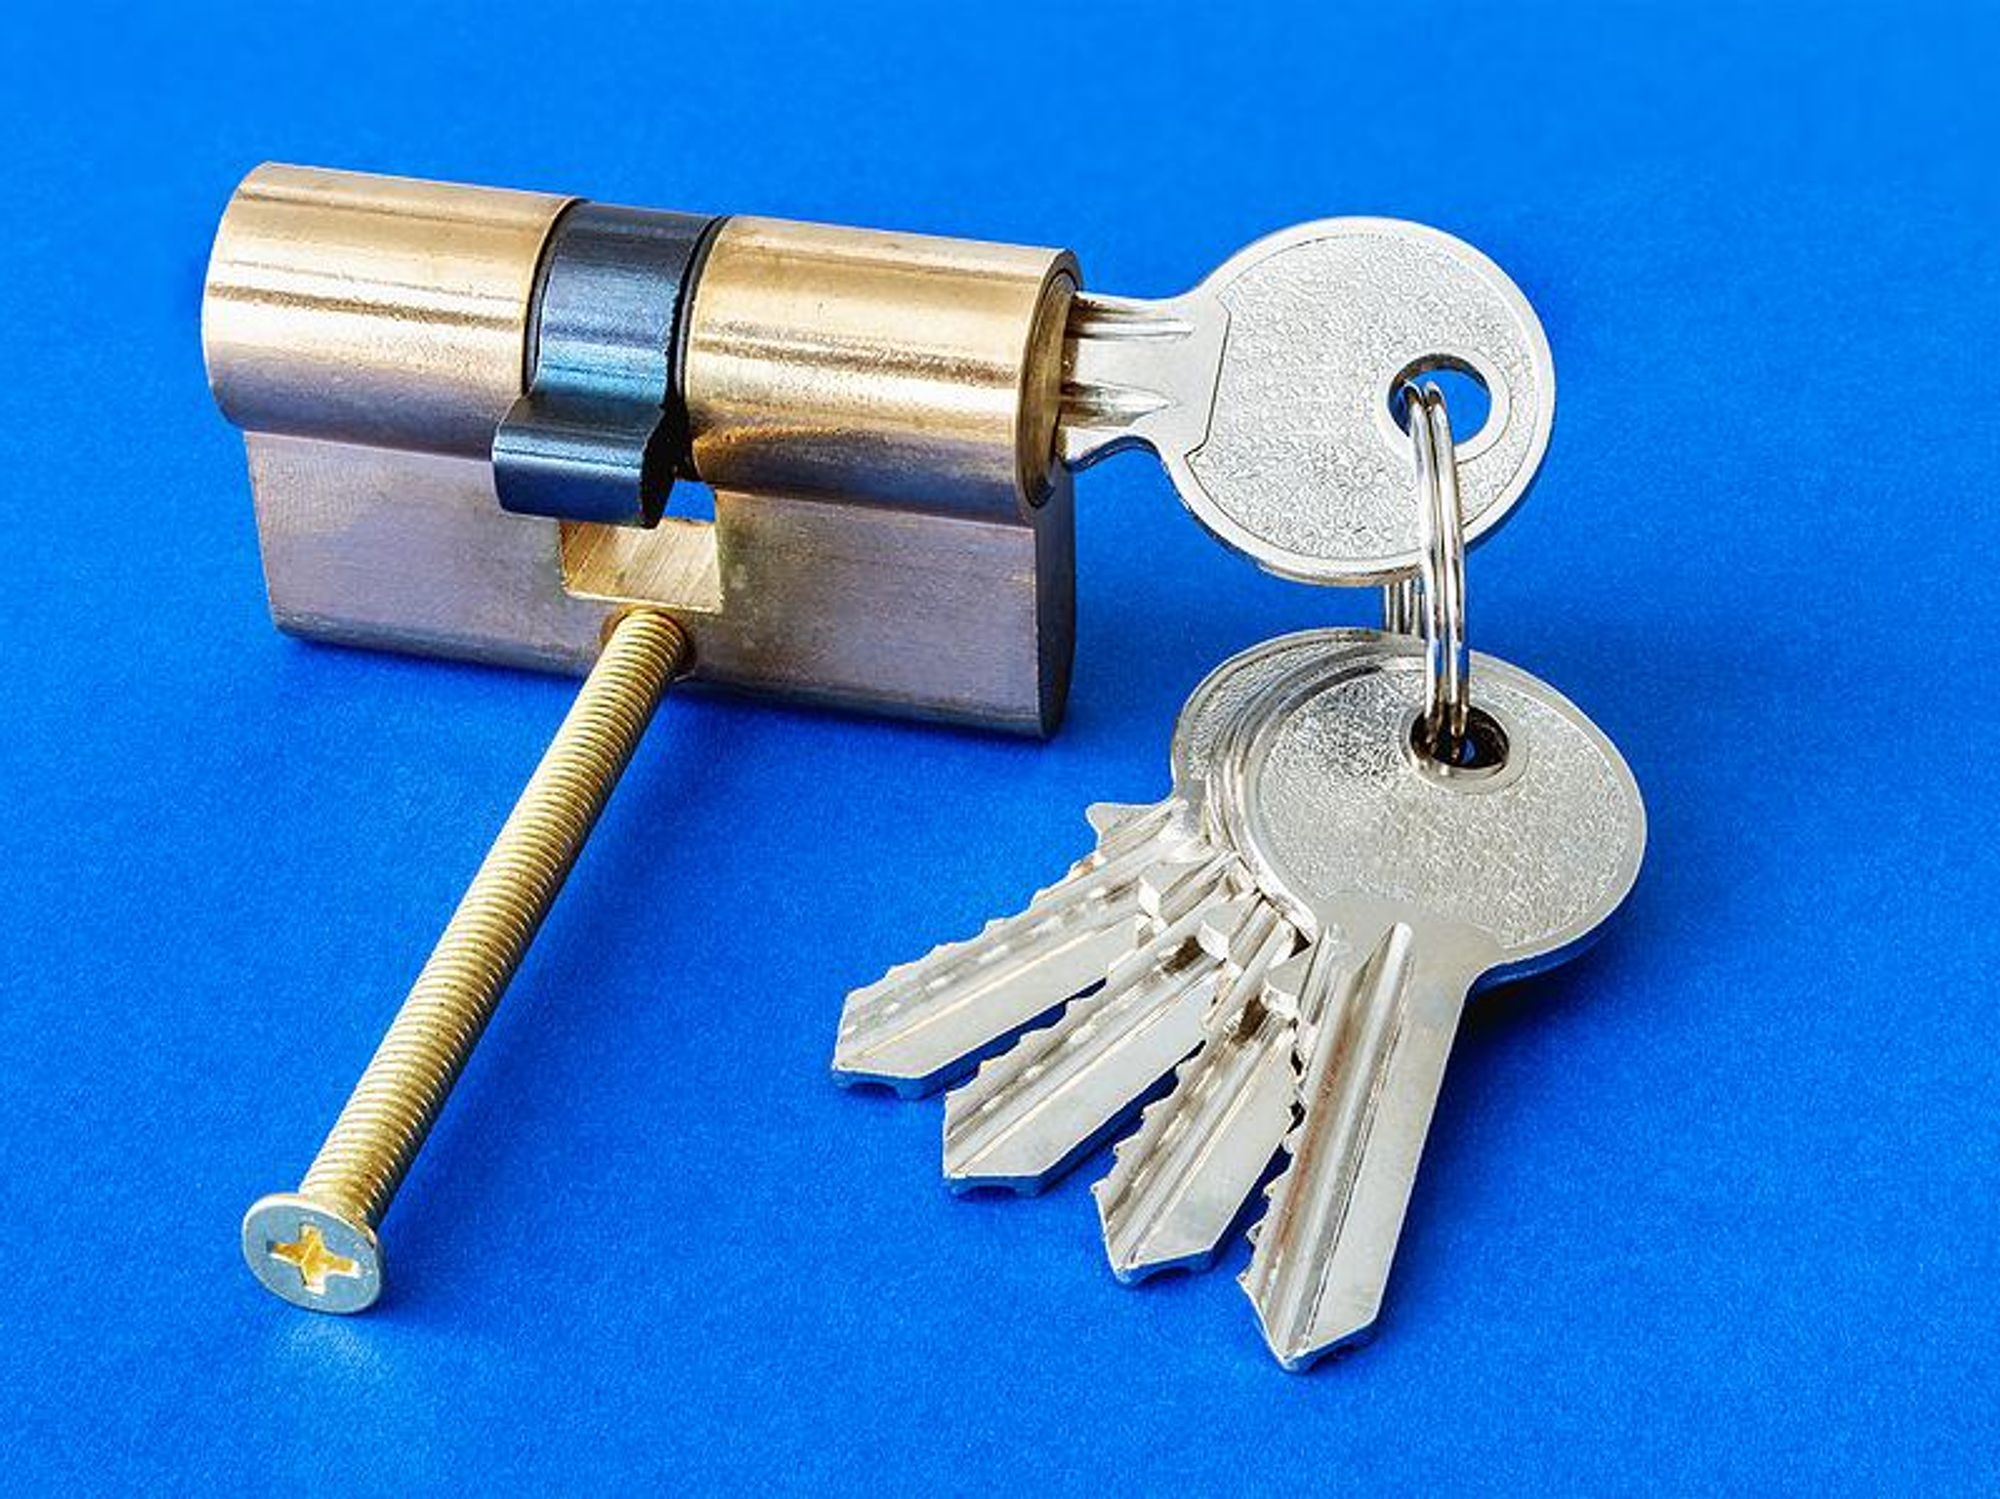 internal mechanism, key in lock